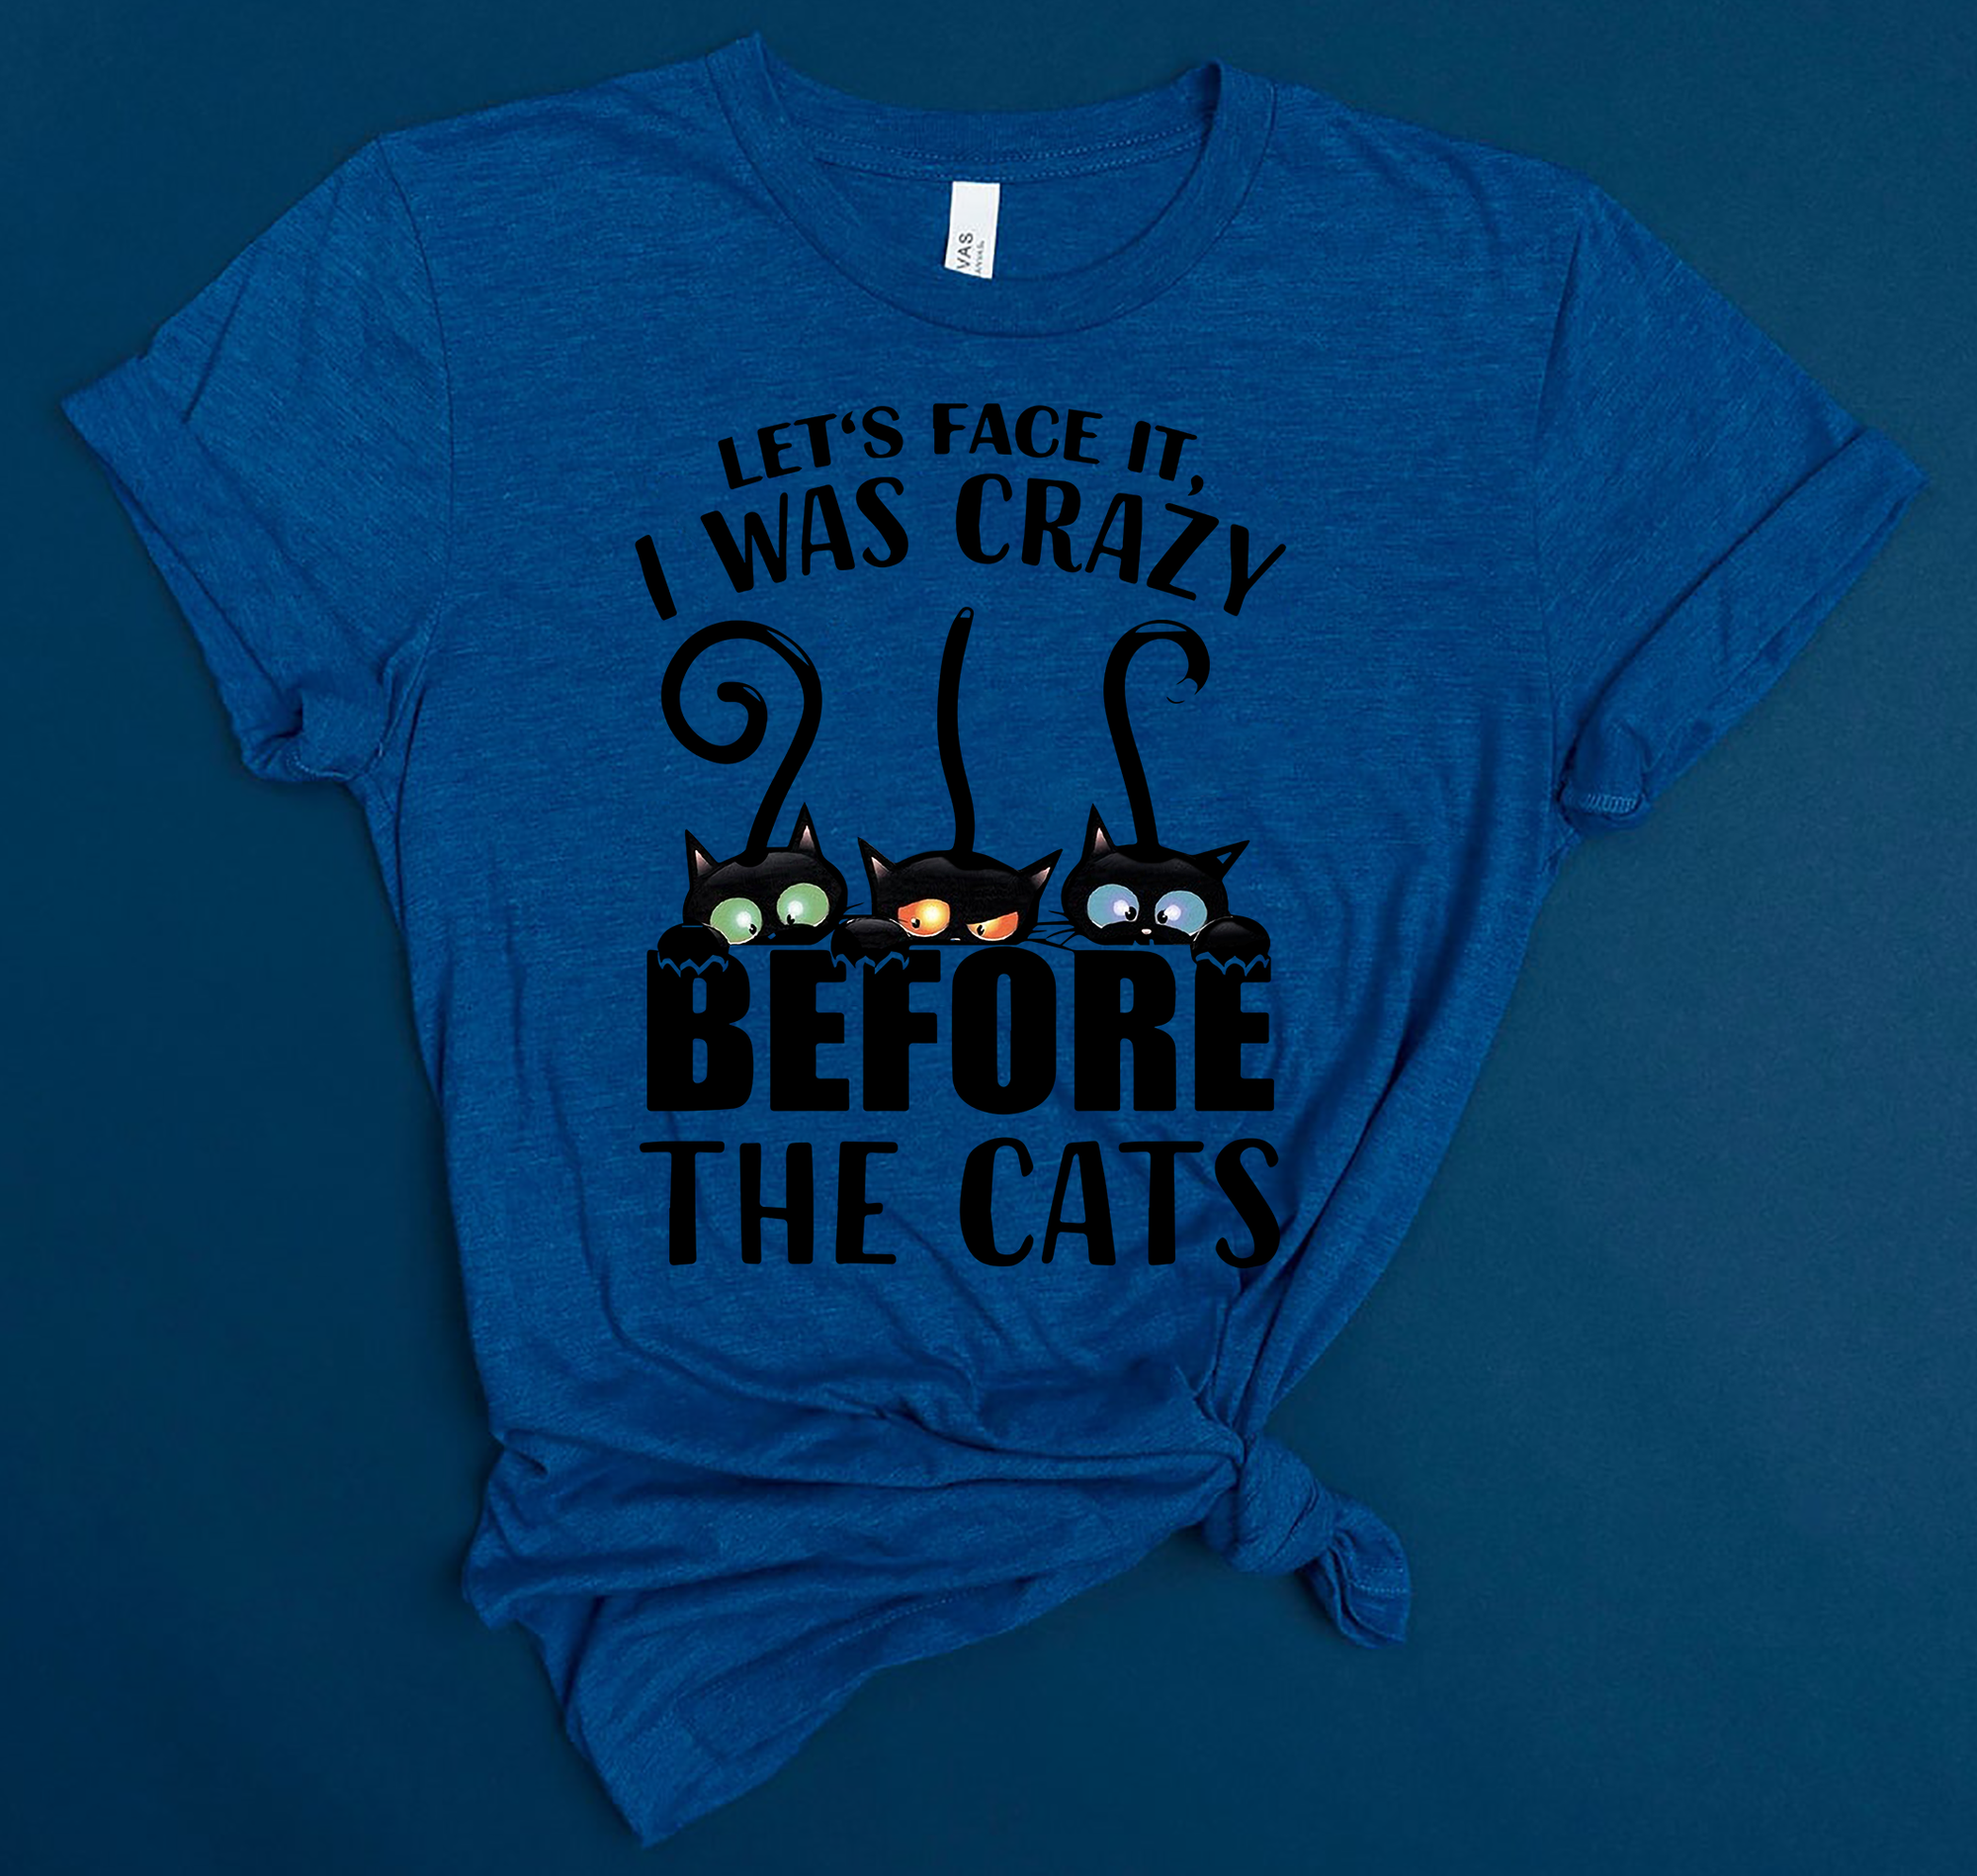 The Cats Standard T-shirt